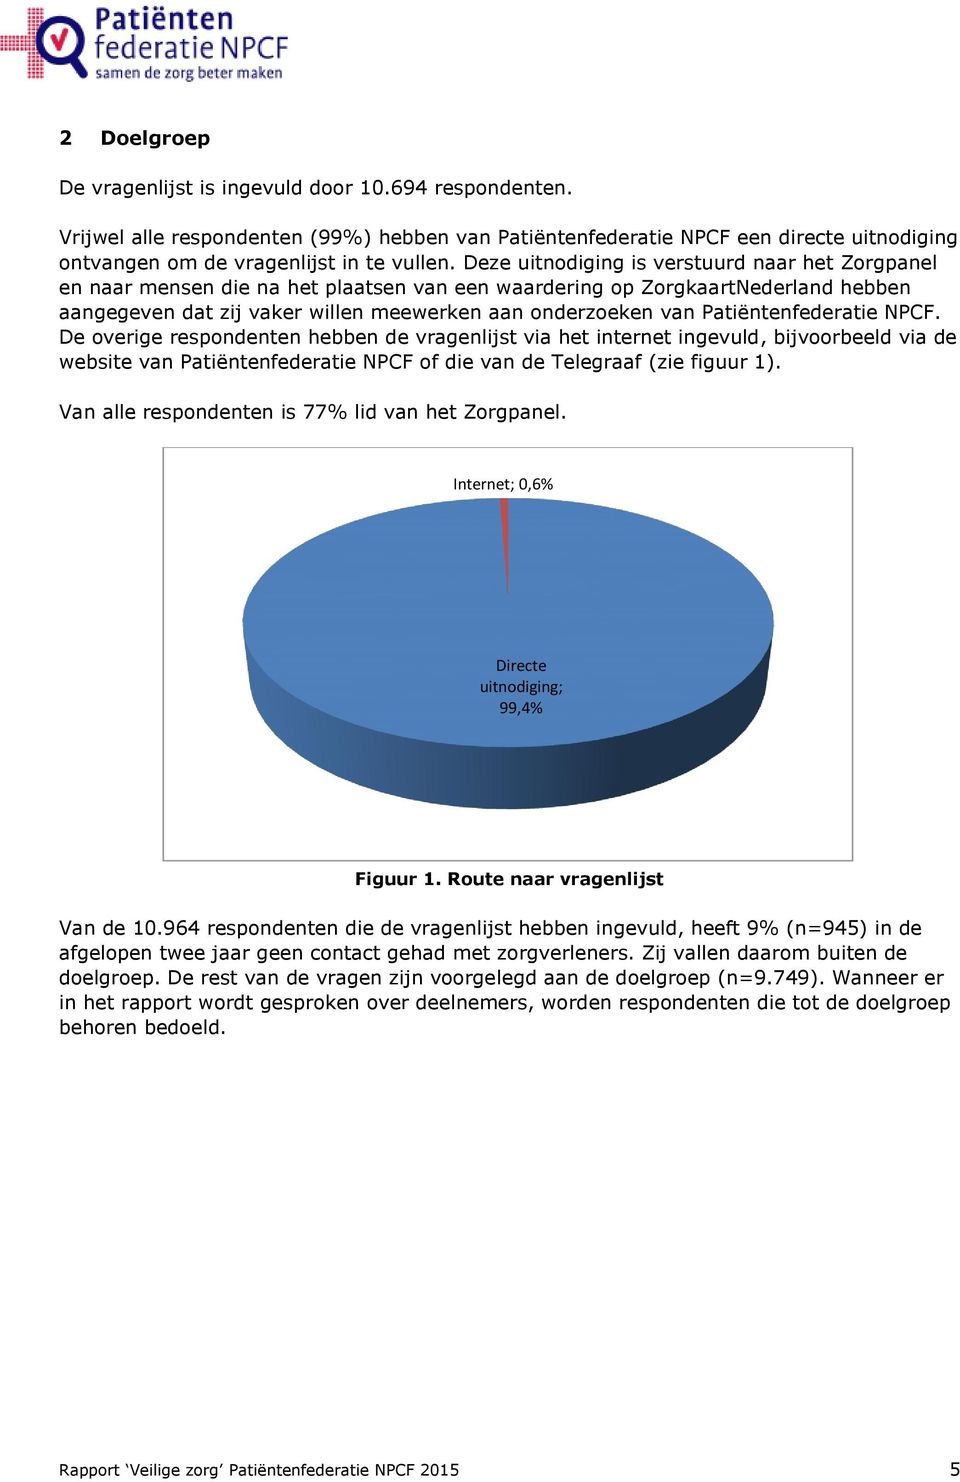 Patiëntenfederatie NPCF. De overige respondenten hebben de vragenlijst via het internet ingevuld, bijvoorbeeld via de website van Patiëntenfederatie NPCF of die van de Telegraaf (zie figuur 1).